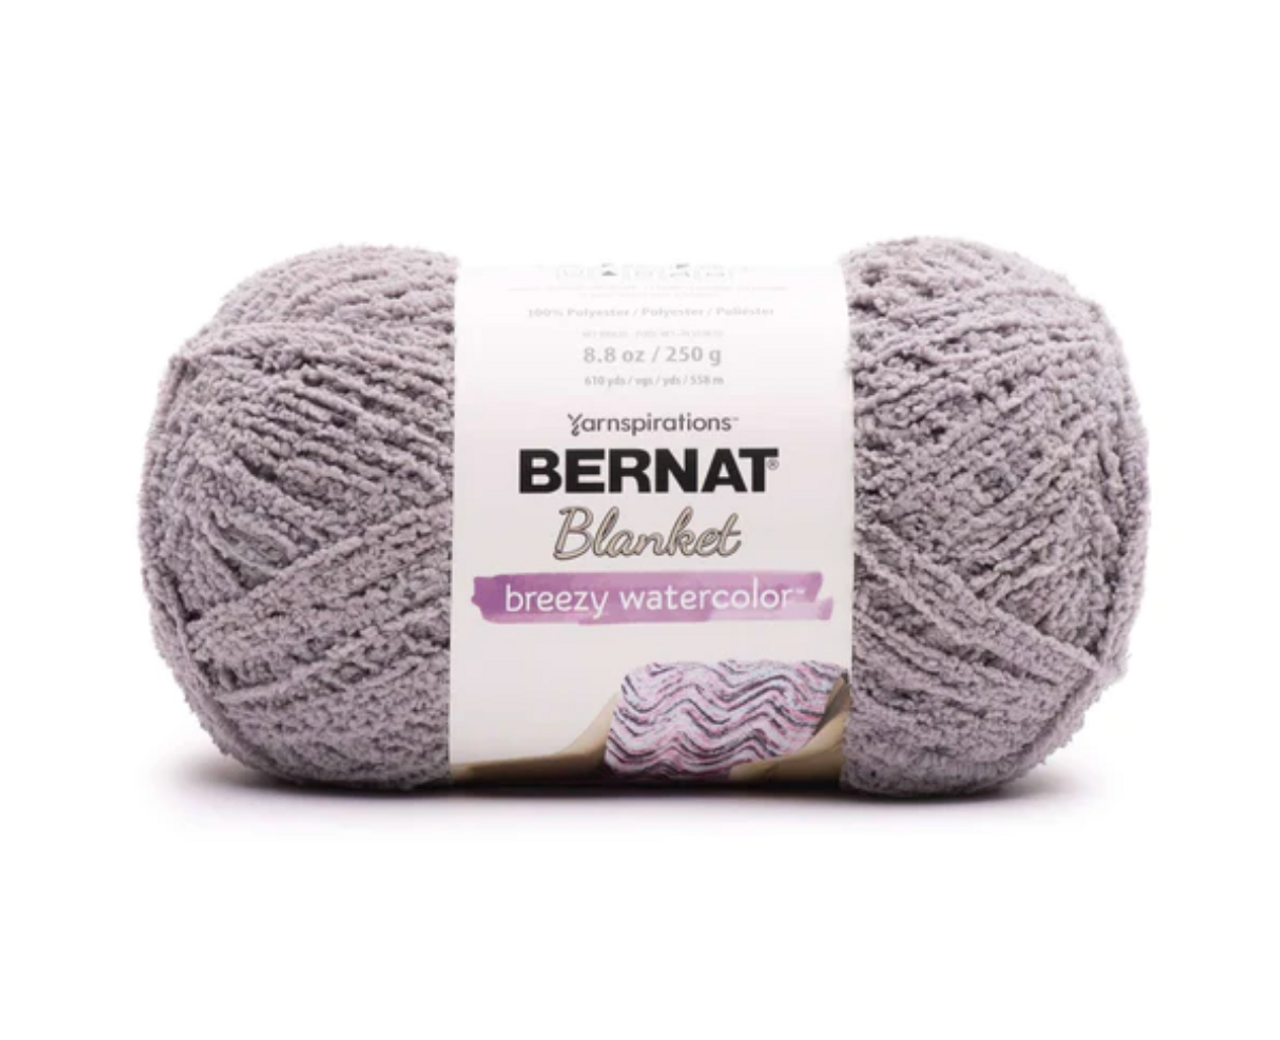 Bernat Blanket Breezy Watercolor Silver 250g Knitting & Crochet Yarn